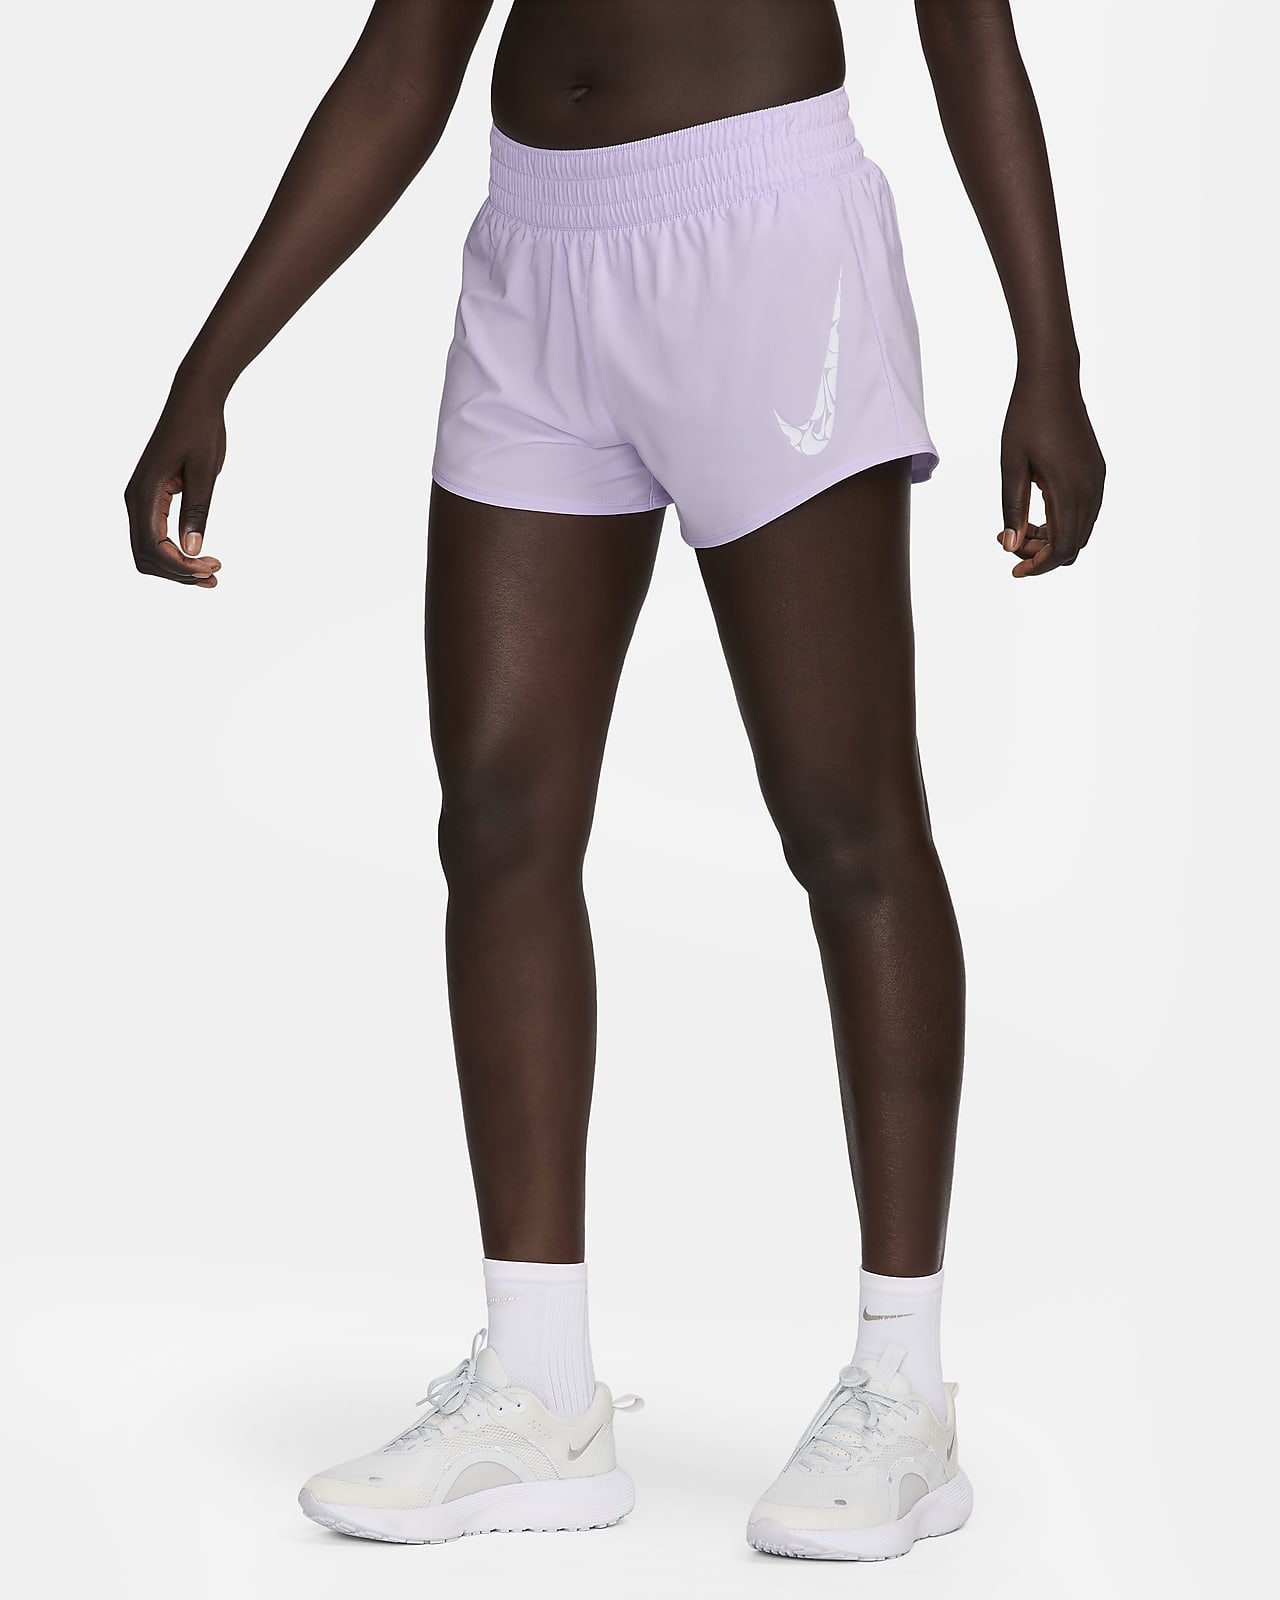 Γυναικείο σορτς μεσαίου ύψους με επένδυση εσωτερικού σορτς Dri-FIT Nike One 8 cm